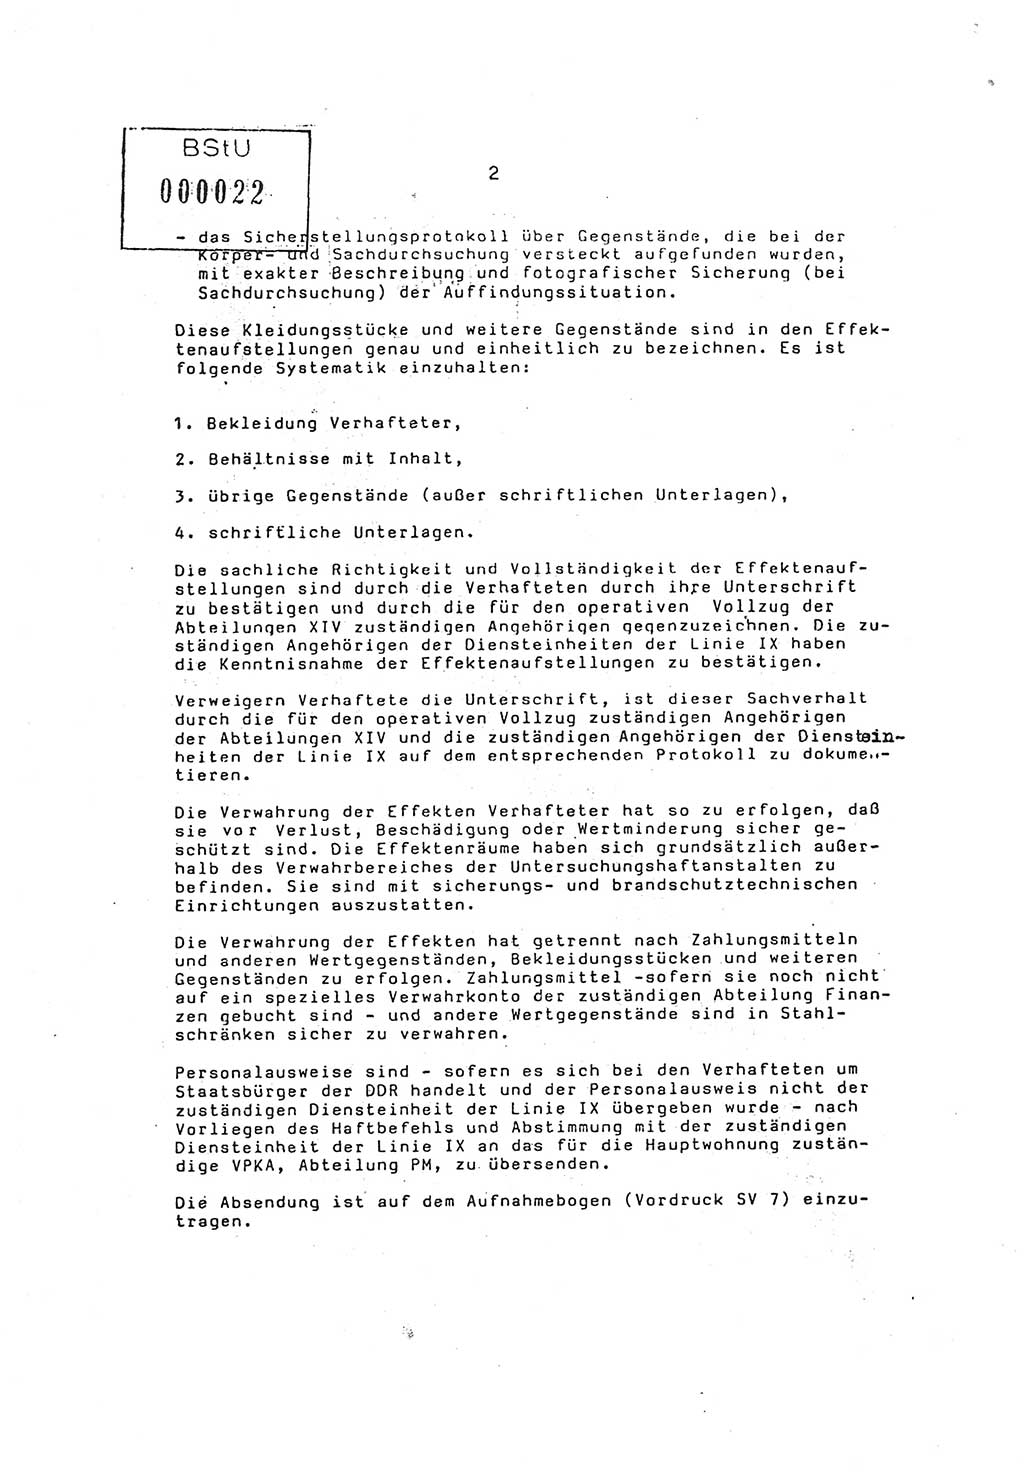 Ordnung Nr. 3/86 über den Umgang mit den Effekten Verhafteter (Effektenordnung) in den Untersuchungshaftanstalten (UHA) des MfS (Ministerium für Staatssicherheit) [Deutsche Demokratische Republik (DDR)], Abteilung ⅩⅣ, Leiter, Vertrauliche Verschlußsache (VVS) o008-16/86, Berlin, 29.1.1986, Seite 2 (Ordn. 3/86 UHA MfS DDR Abt. ⅩⅣ VVS o008-16/86 1986, S. 2)